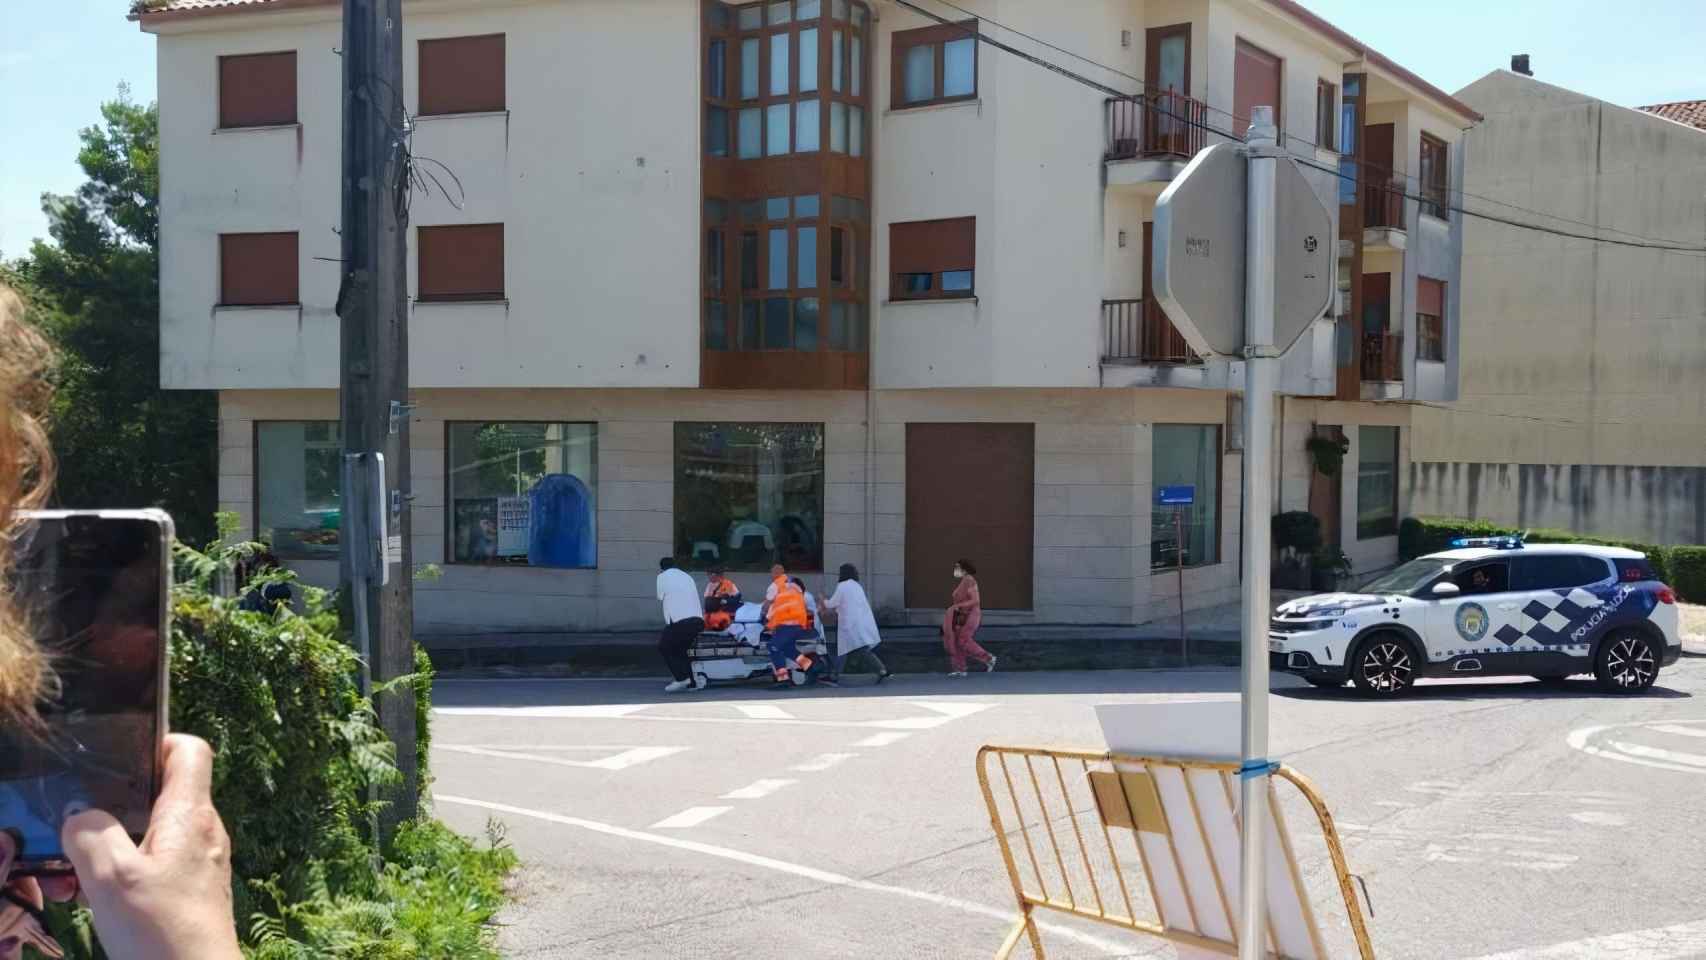 Trasladan a un paciente en camilla por carretera en O Rosal (Pontevedra) por falta de ambulancia